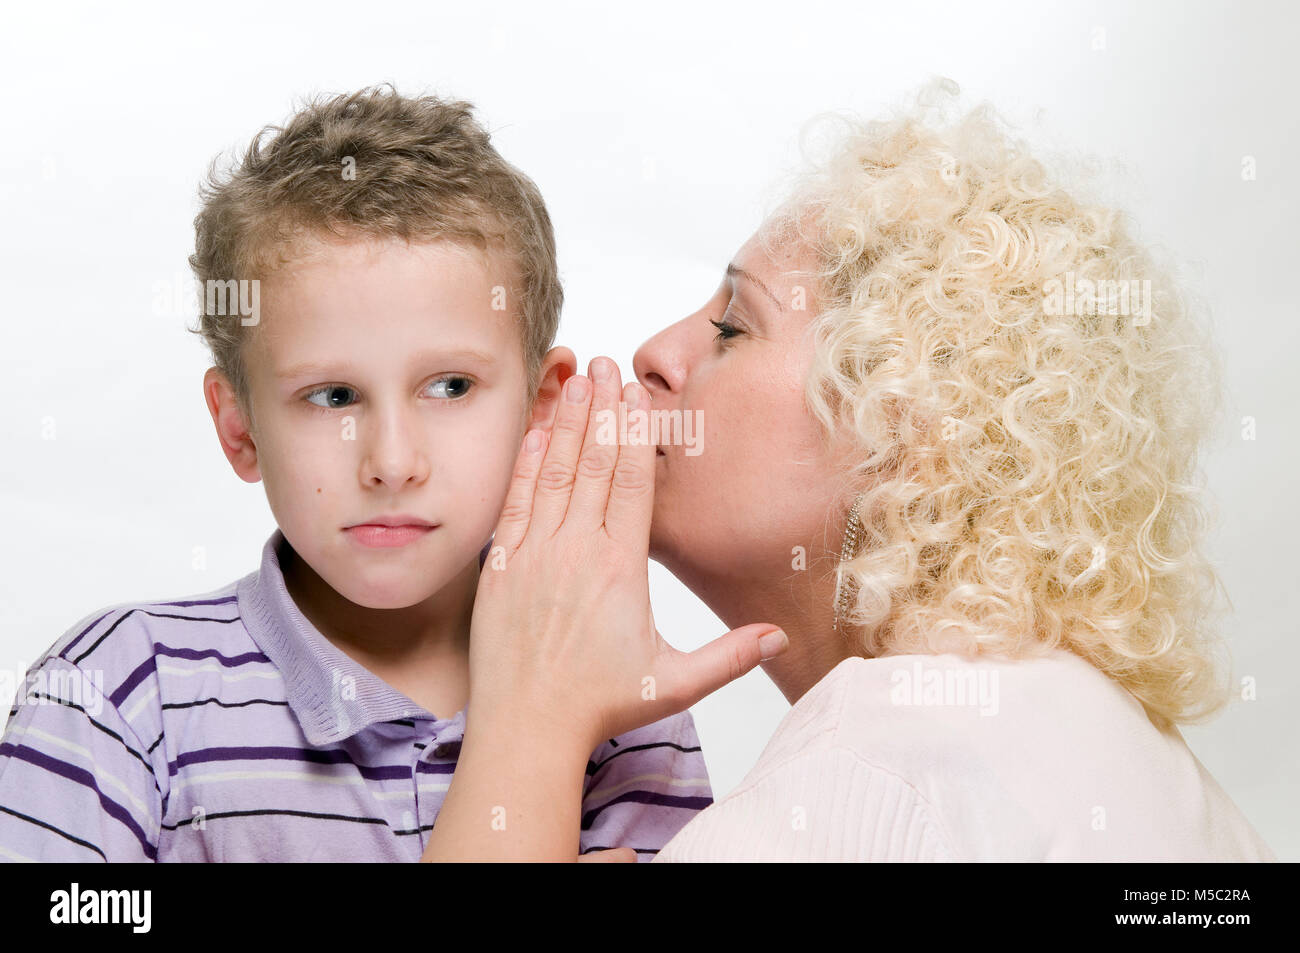 Vista lateral de la cabeza y los hombros de una mujer de pelo rizado rubio susurrando en la oreja de un niño de 8 años de edad delante de un fondo blanco. Foto de stock